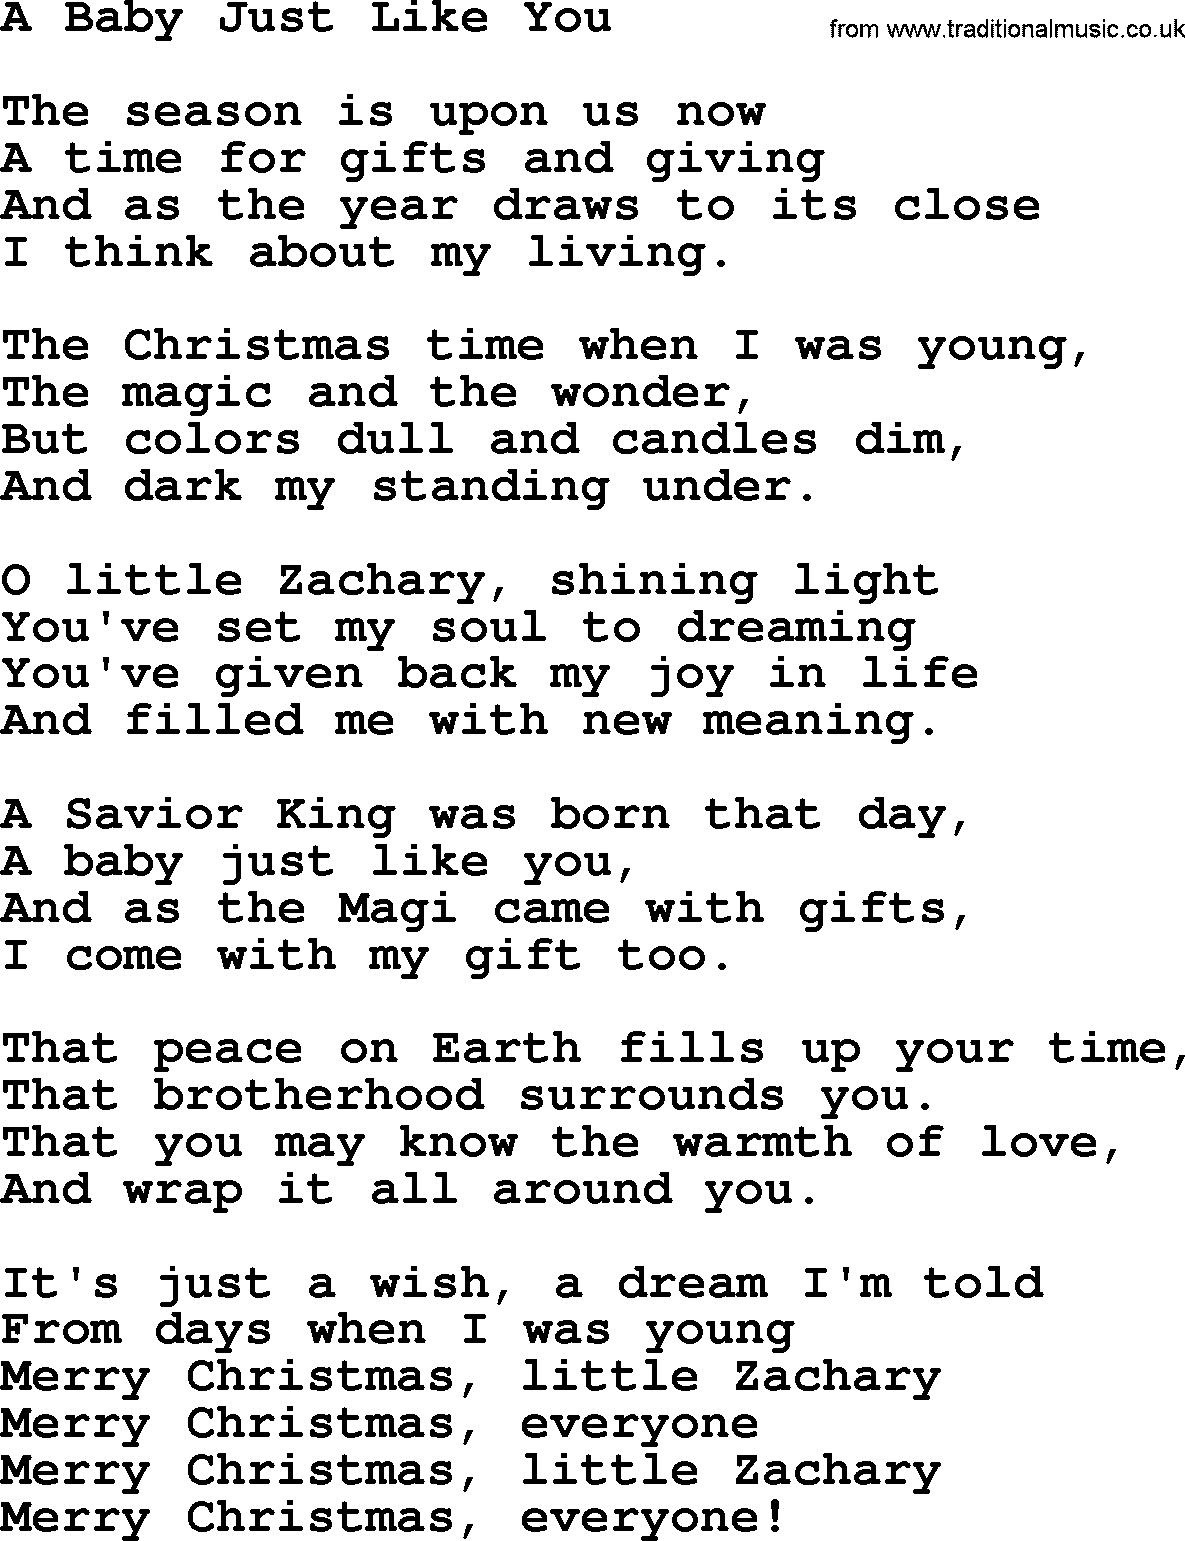 Catholic Hymn: A Baby Just Like You lyrics with PDF